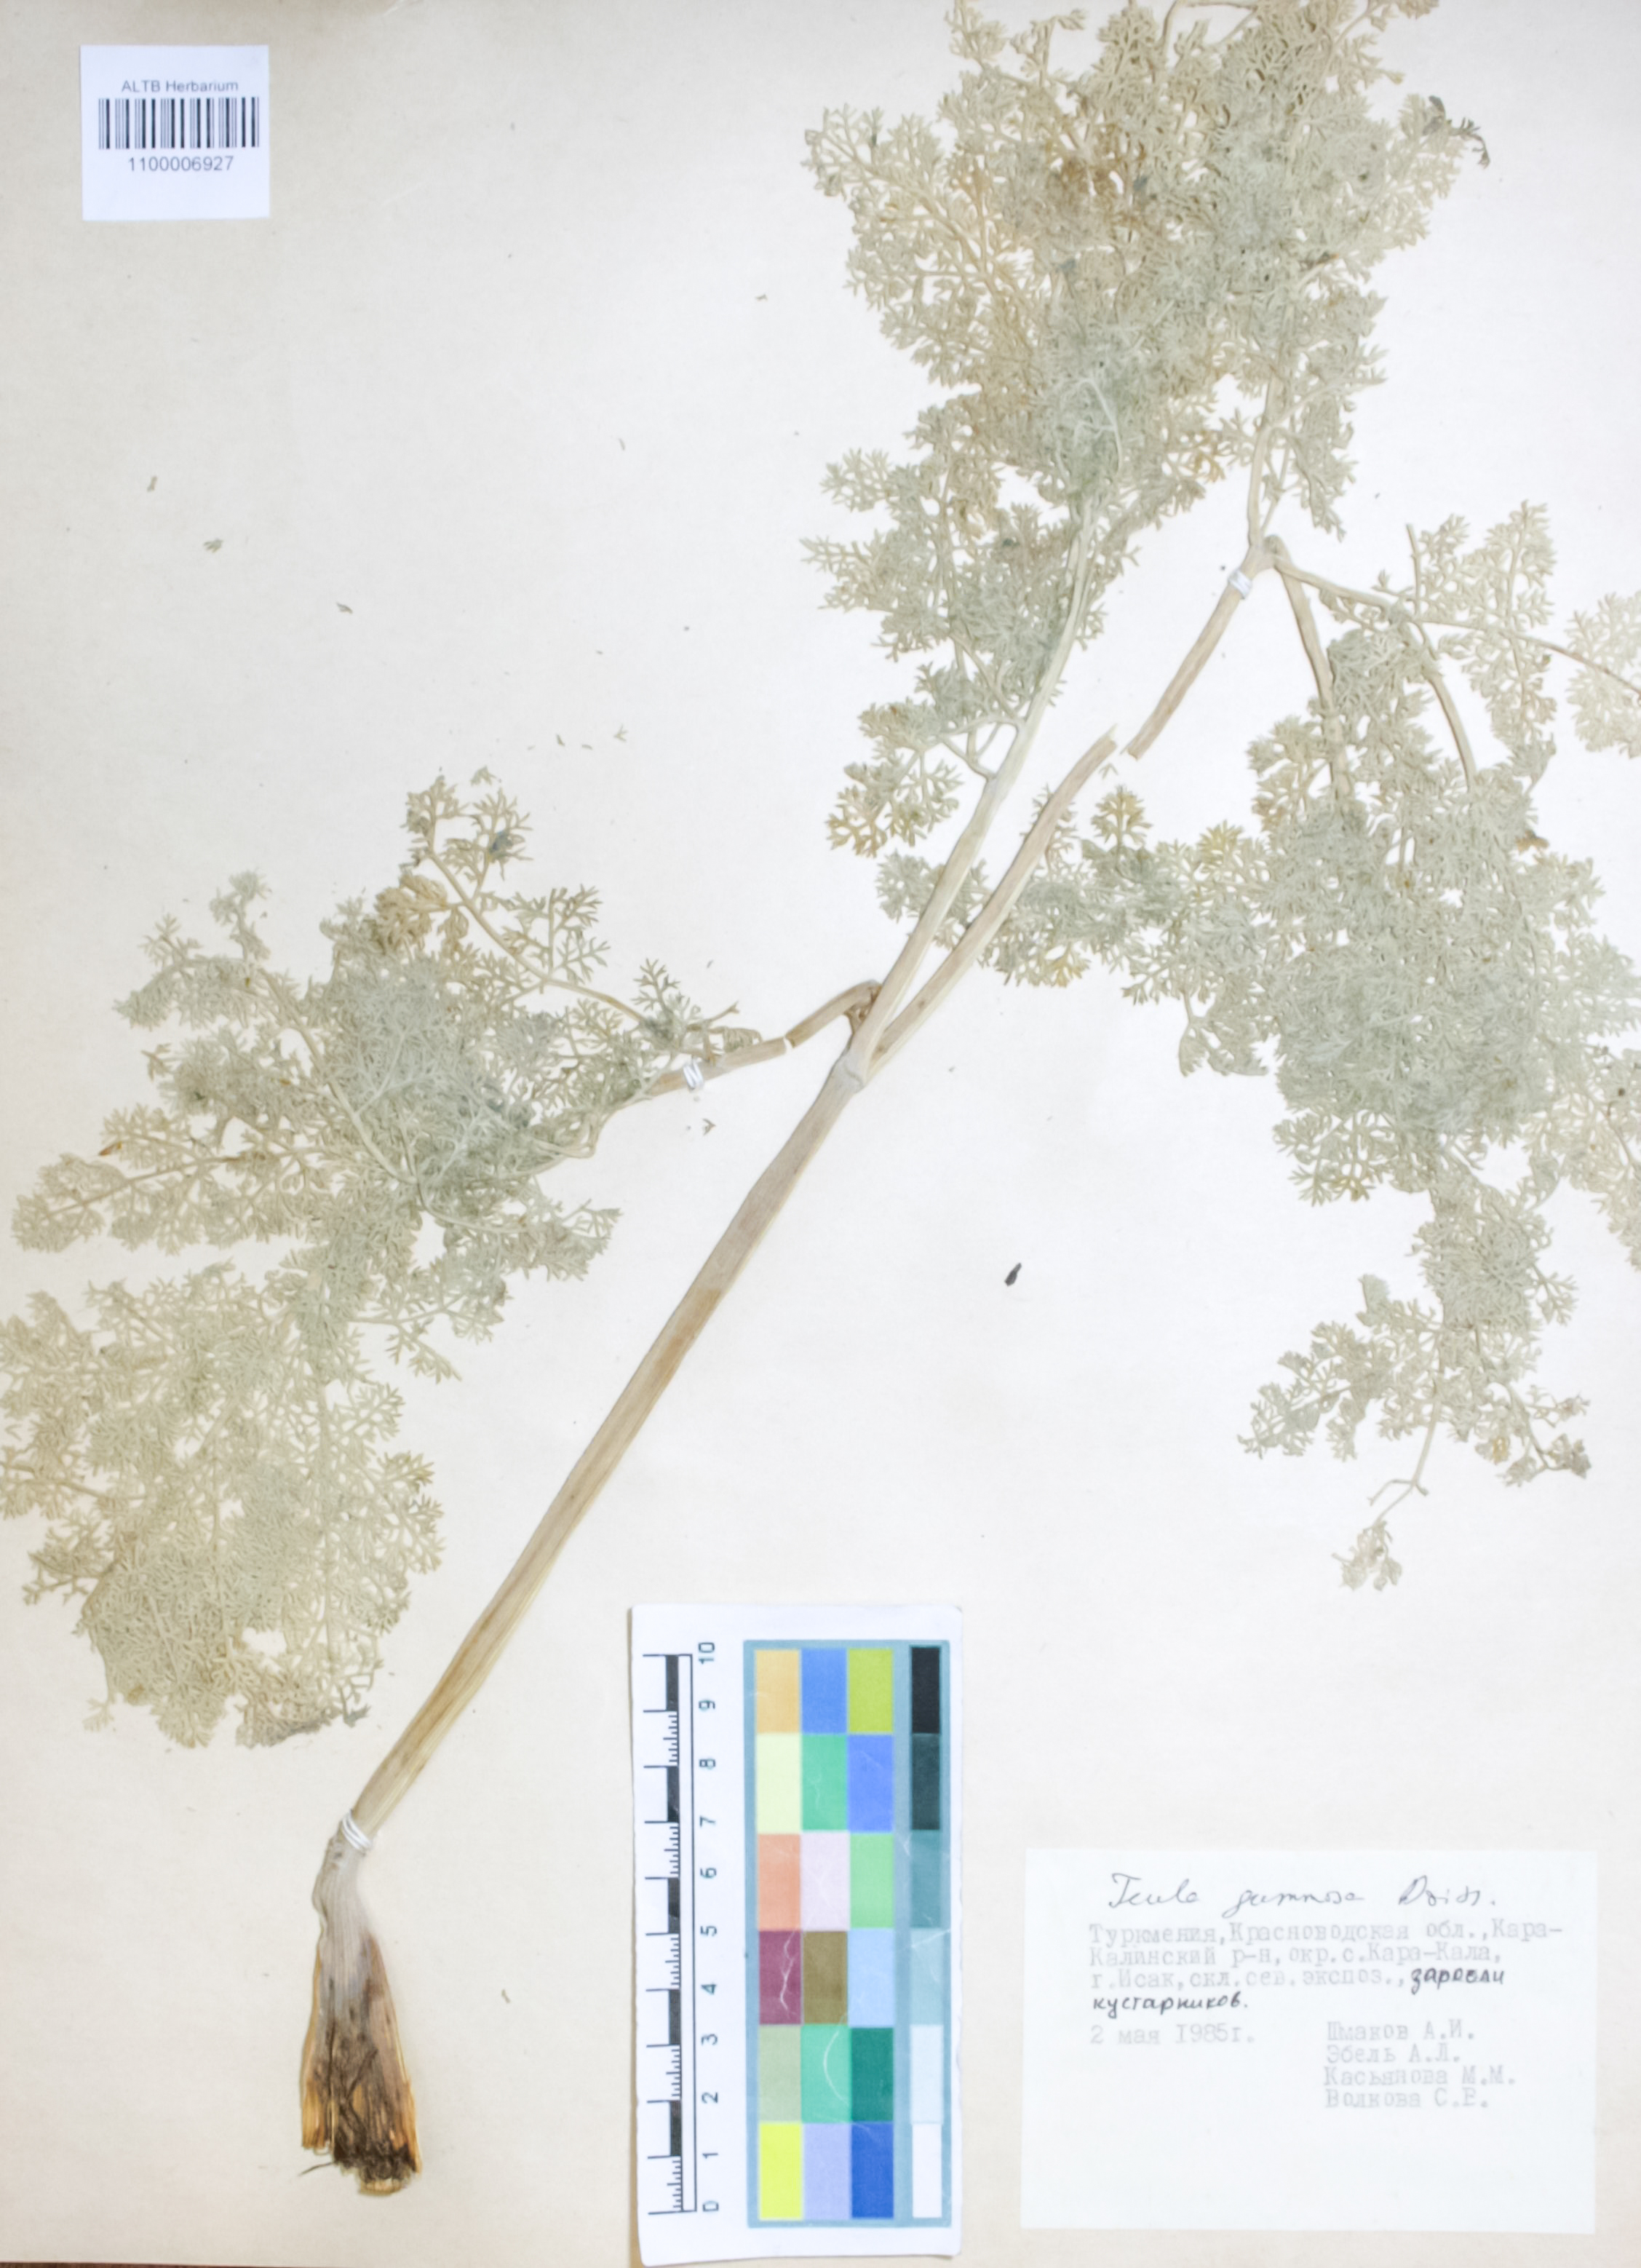 Apiaceae,Ferula gummosa Boiss.